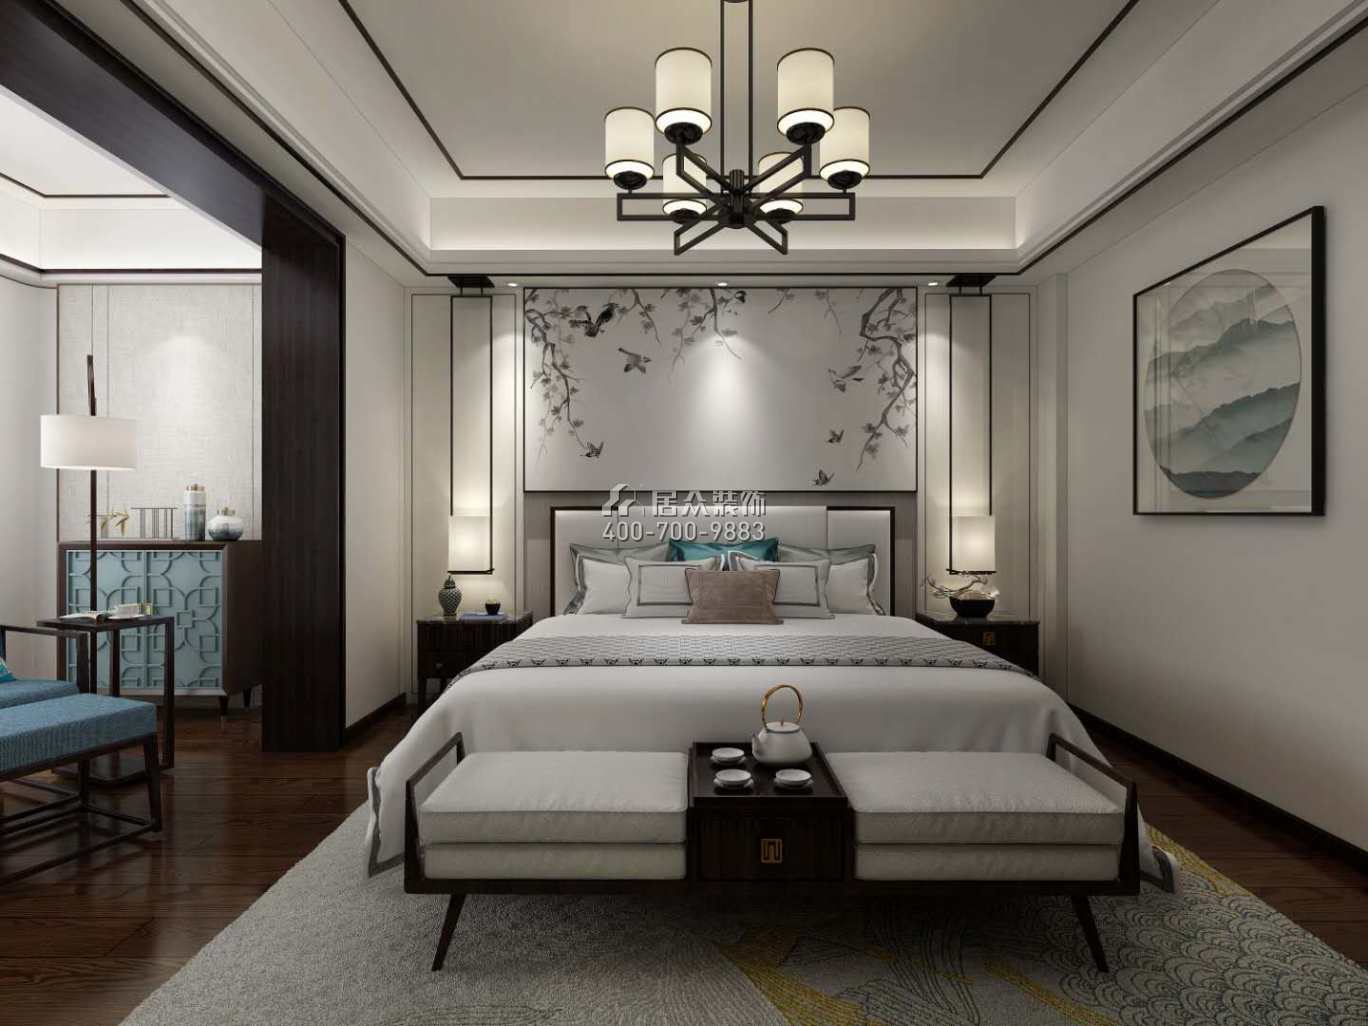 龍吟水榭500平方米中式風格別墅戶型臥室裝修效果圖